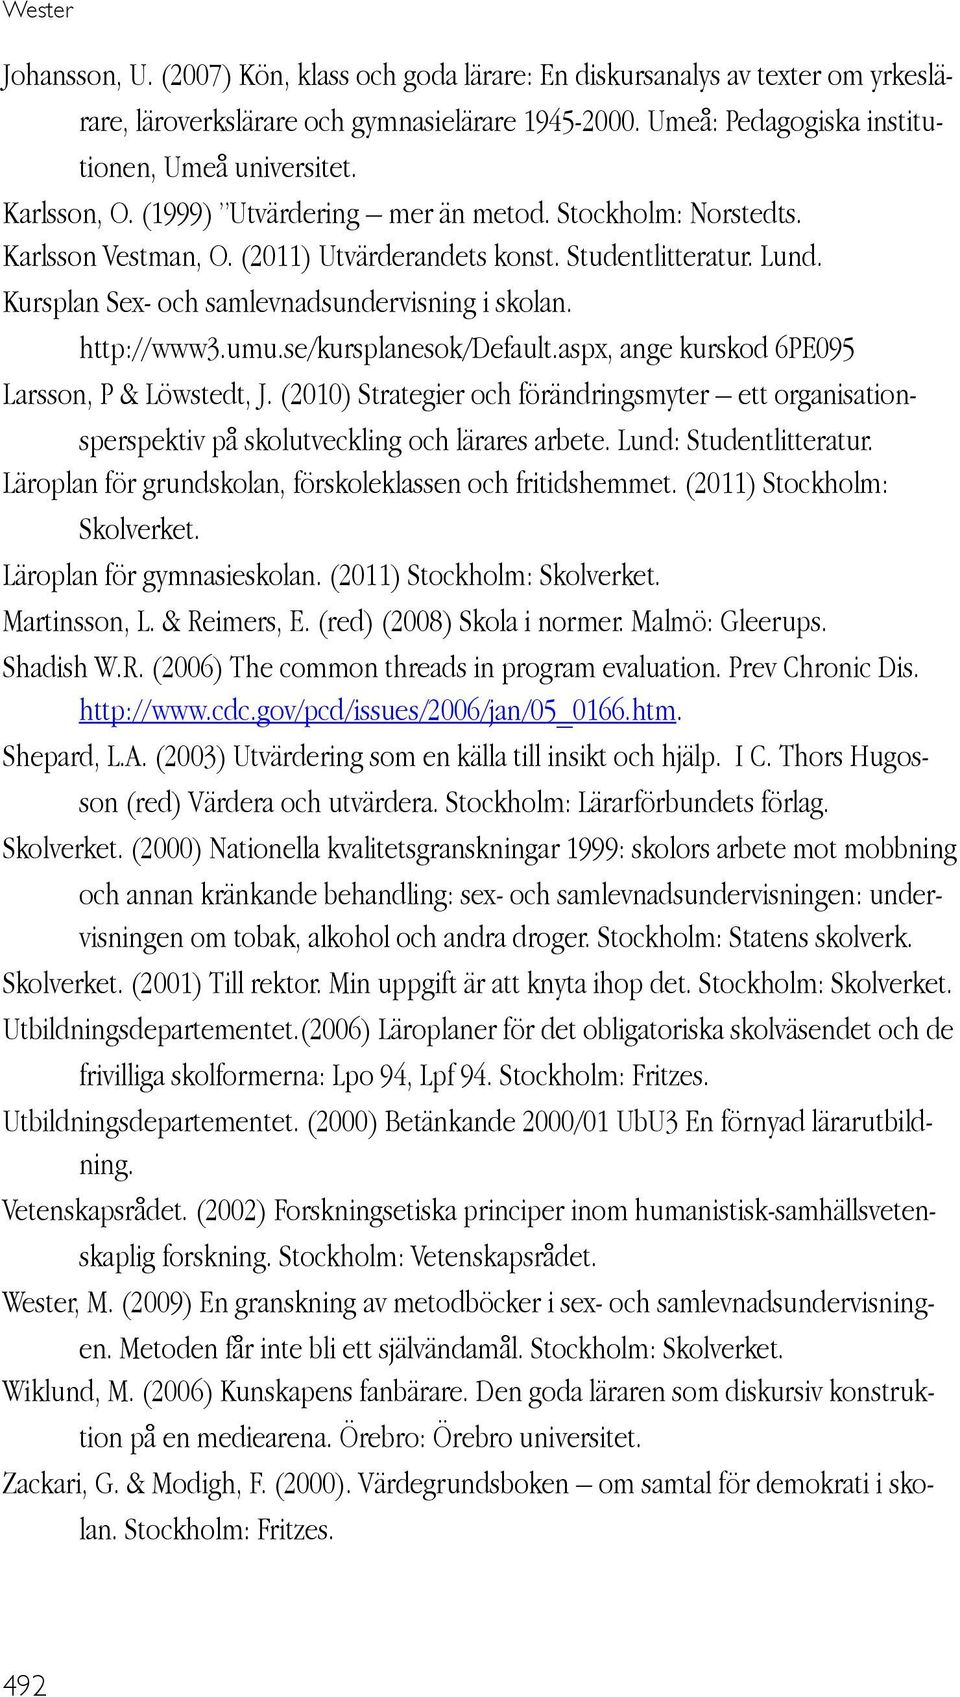 http://www3.umu.se/kursplanesok/default.aspx, ange kurskod 6PE095 Larsson, P & Löwstedt, J. (2010) Strategier och förändringsmyter ett organisationsperspektiv på skolutveckling och lärares arbete.